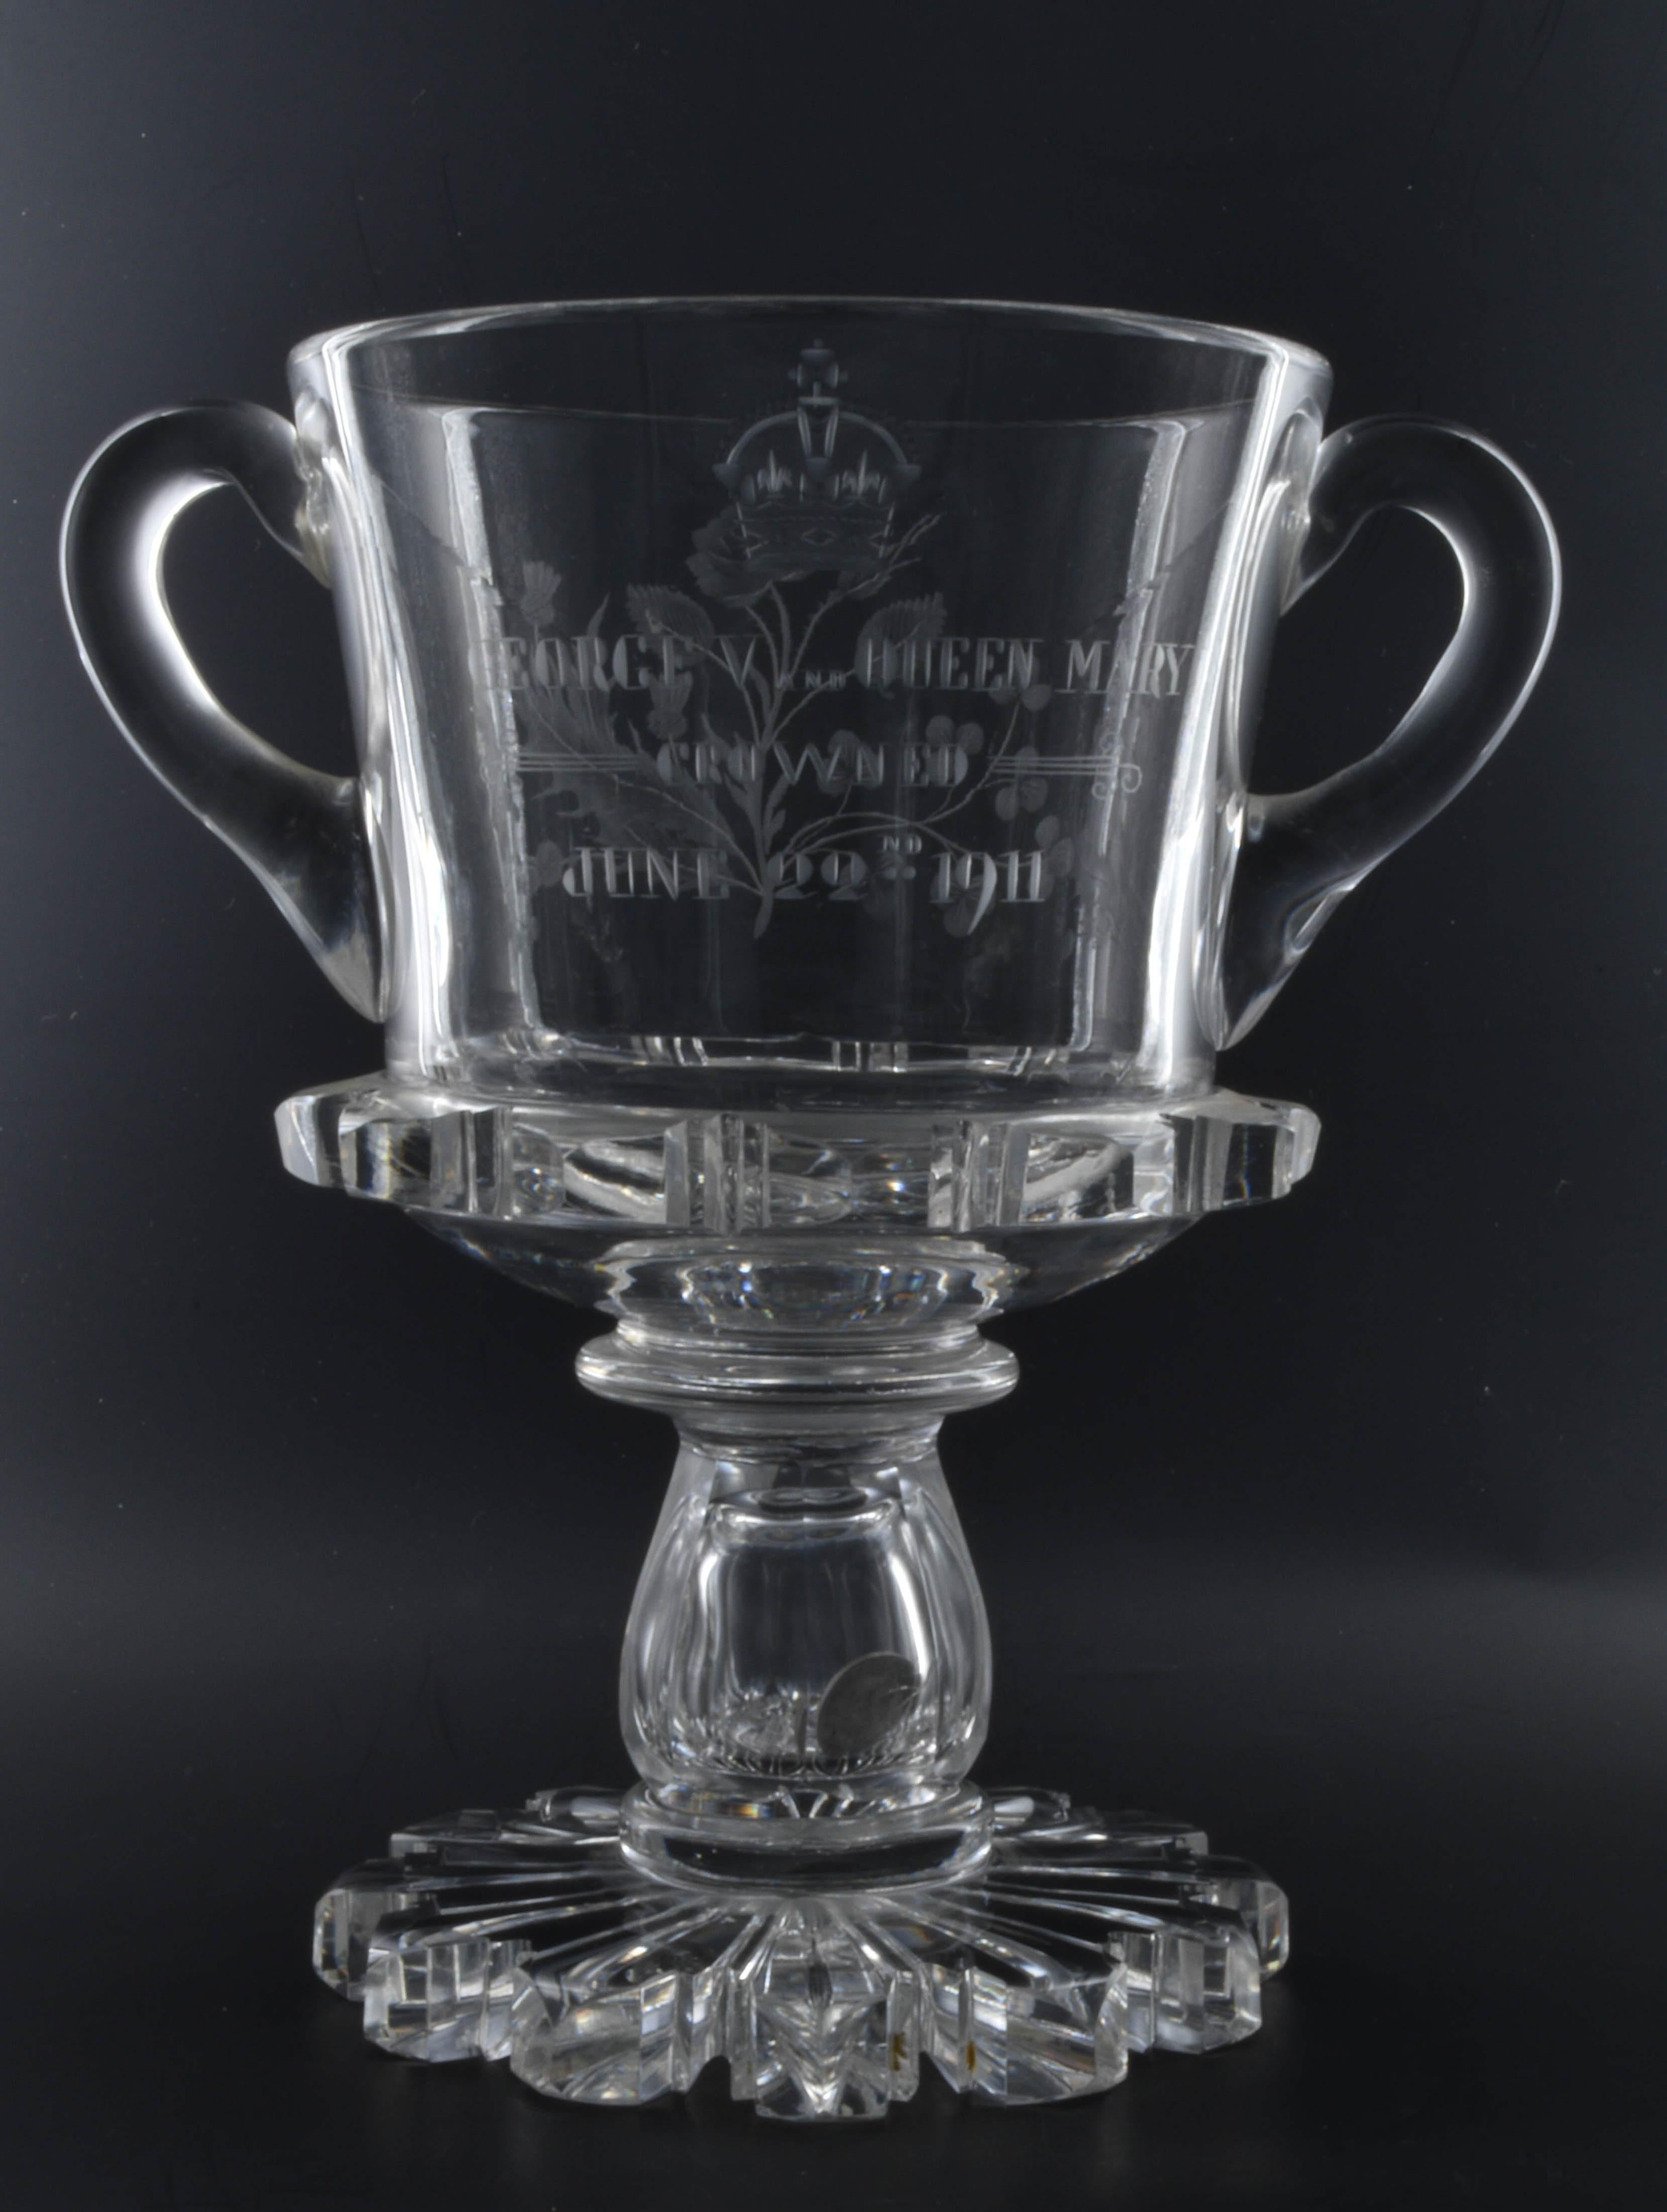 Coupe d'amour en cristal de plomb, couronnement de George V et de la reine Mary, 22 juin 1911. 

Réalisé pour le détaillant Thomas Goode. Une mèche traditionnelle de trois pennies est sertie dans la tige creuse, une belle indication de l'habileté du